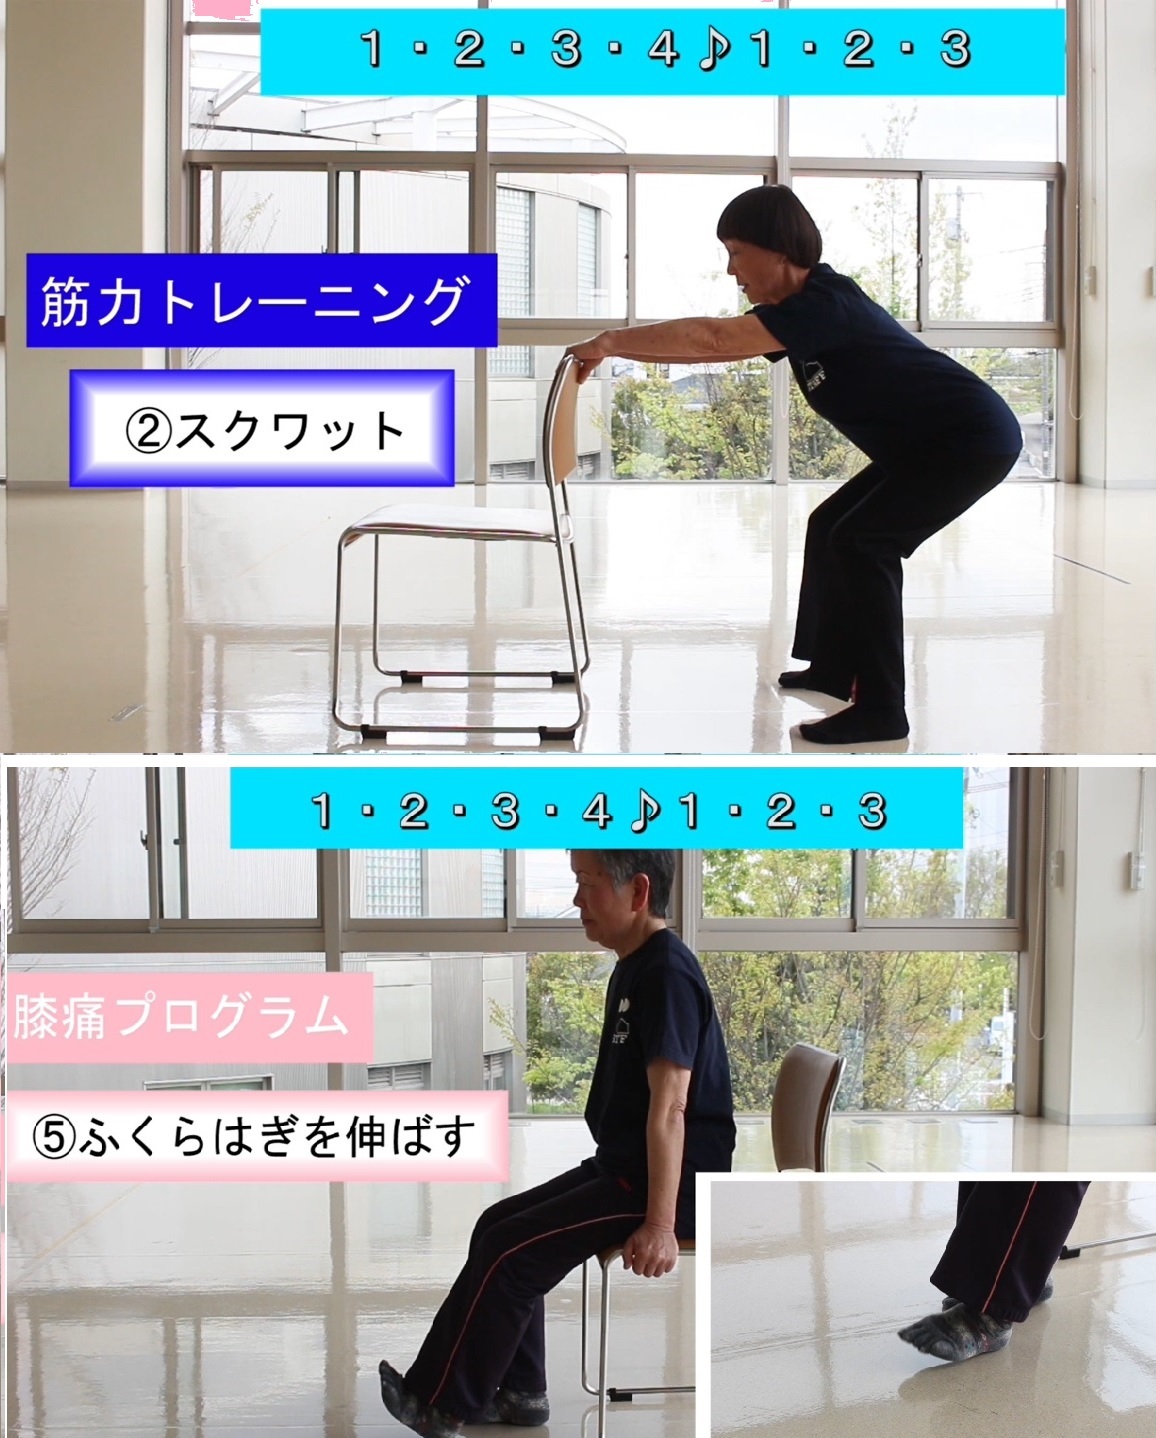 上：筋力トレーニングイメージ（椅子の背もたれに手をかけてひざを曲げて中腰になっている人の写真）、膝痛プログラムイメージ（オスに浅く腰かけてつま先を挙げてふくらはぎを伸ばしている人の写真）